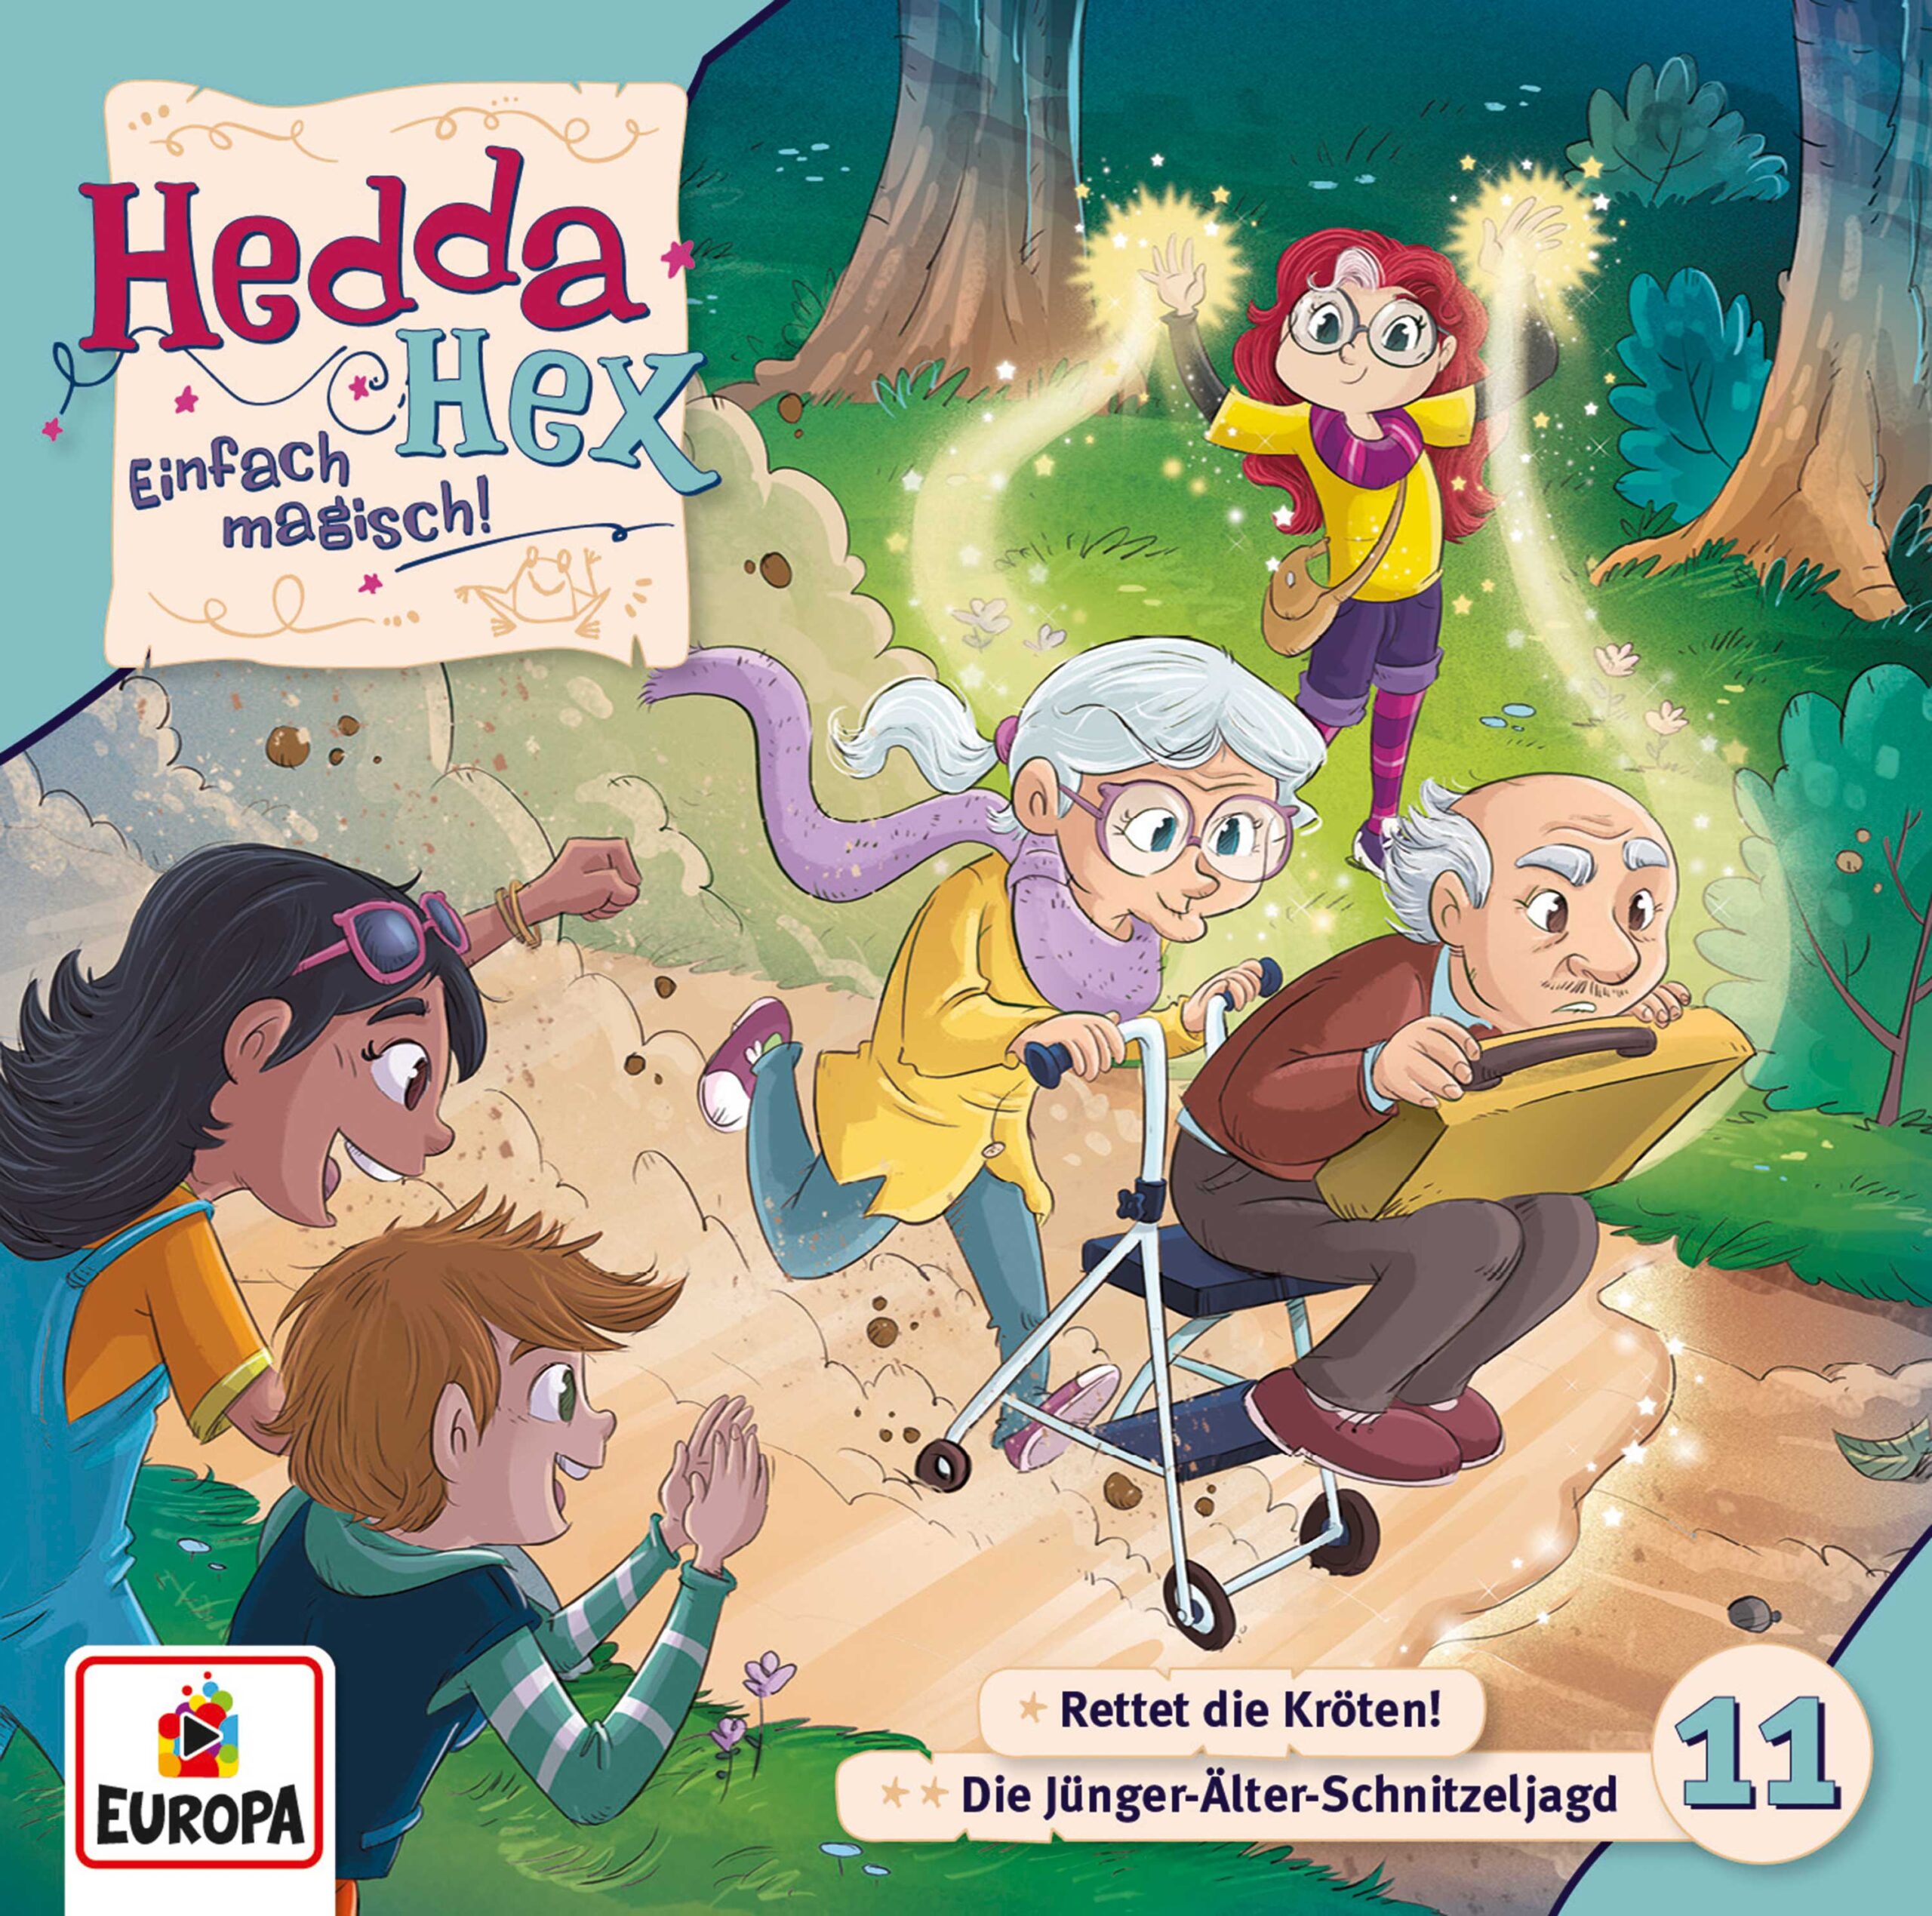 Hedda Hex 11: Rettet die Kröten / Die Jünger-Alter-Schnitzeljagd